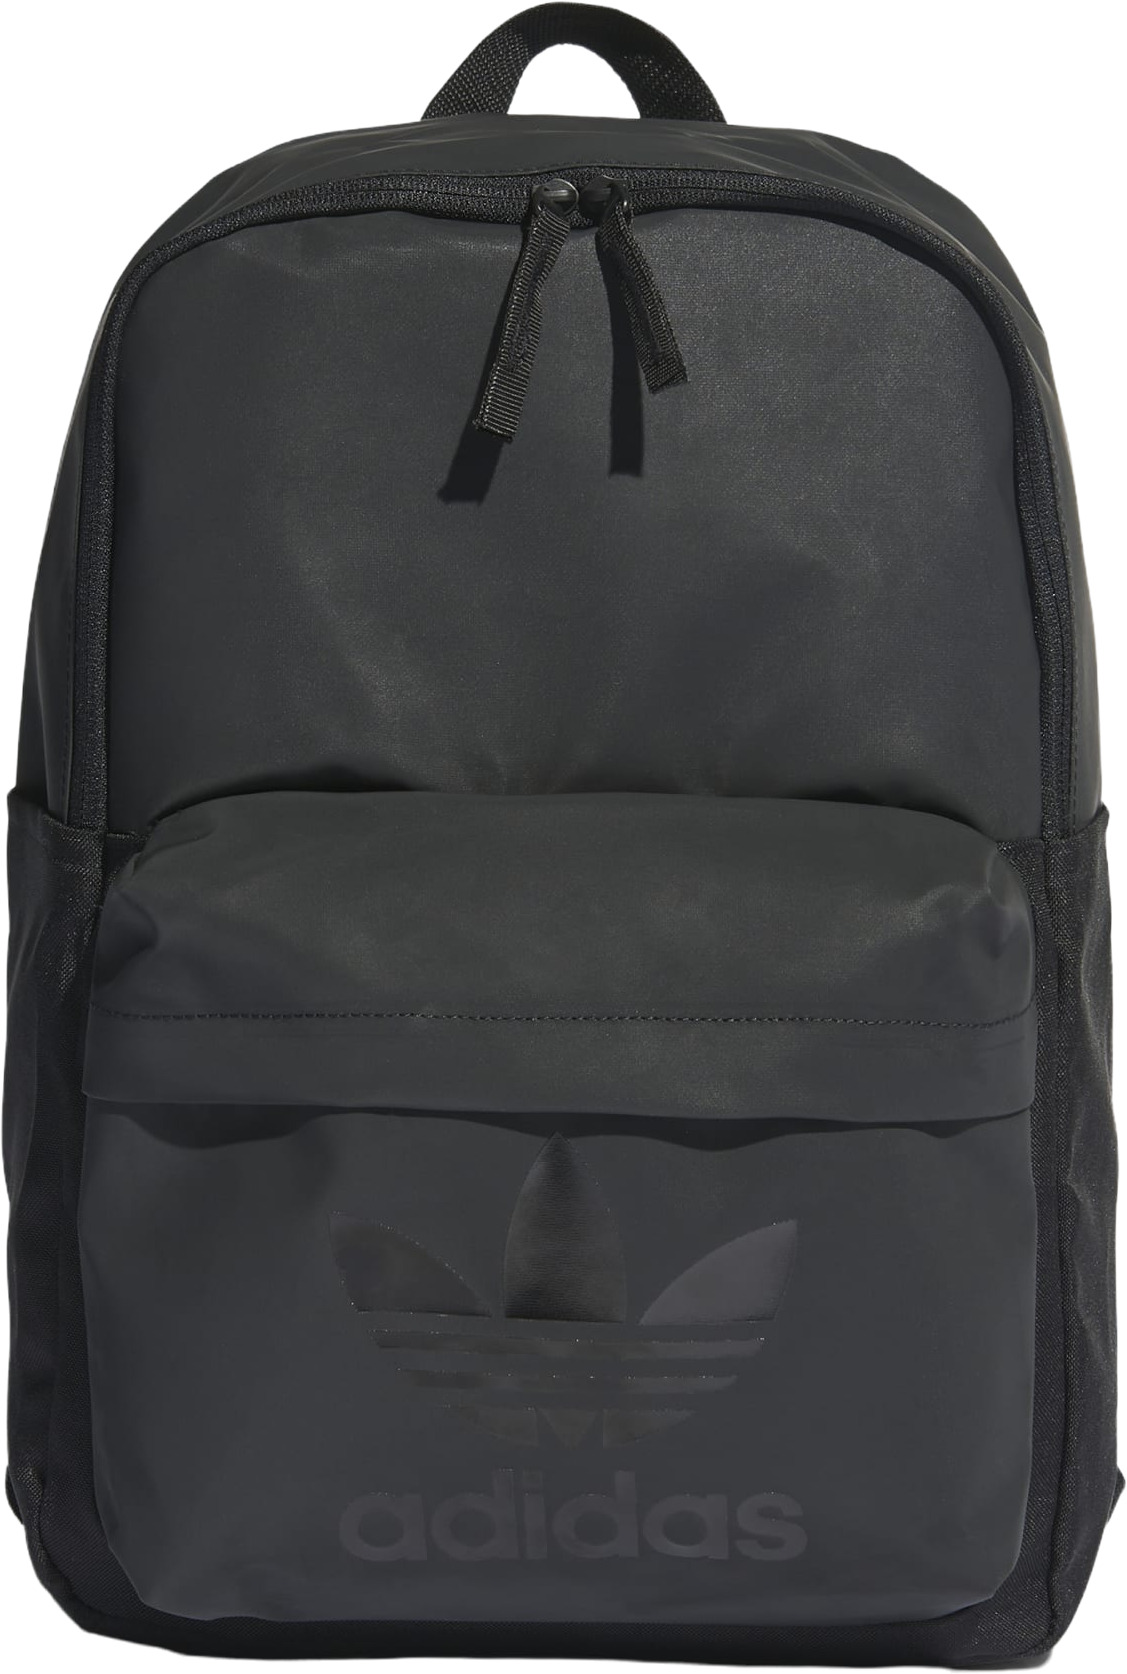 Рюкзак Adidas Backpack черный